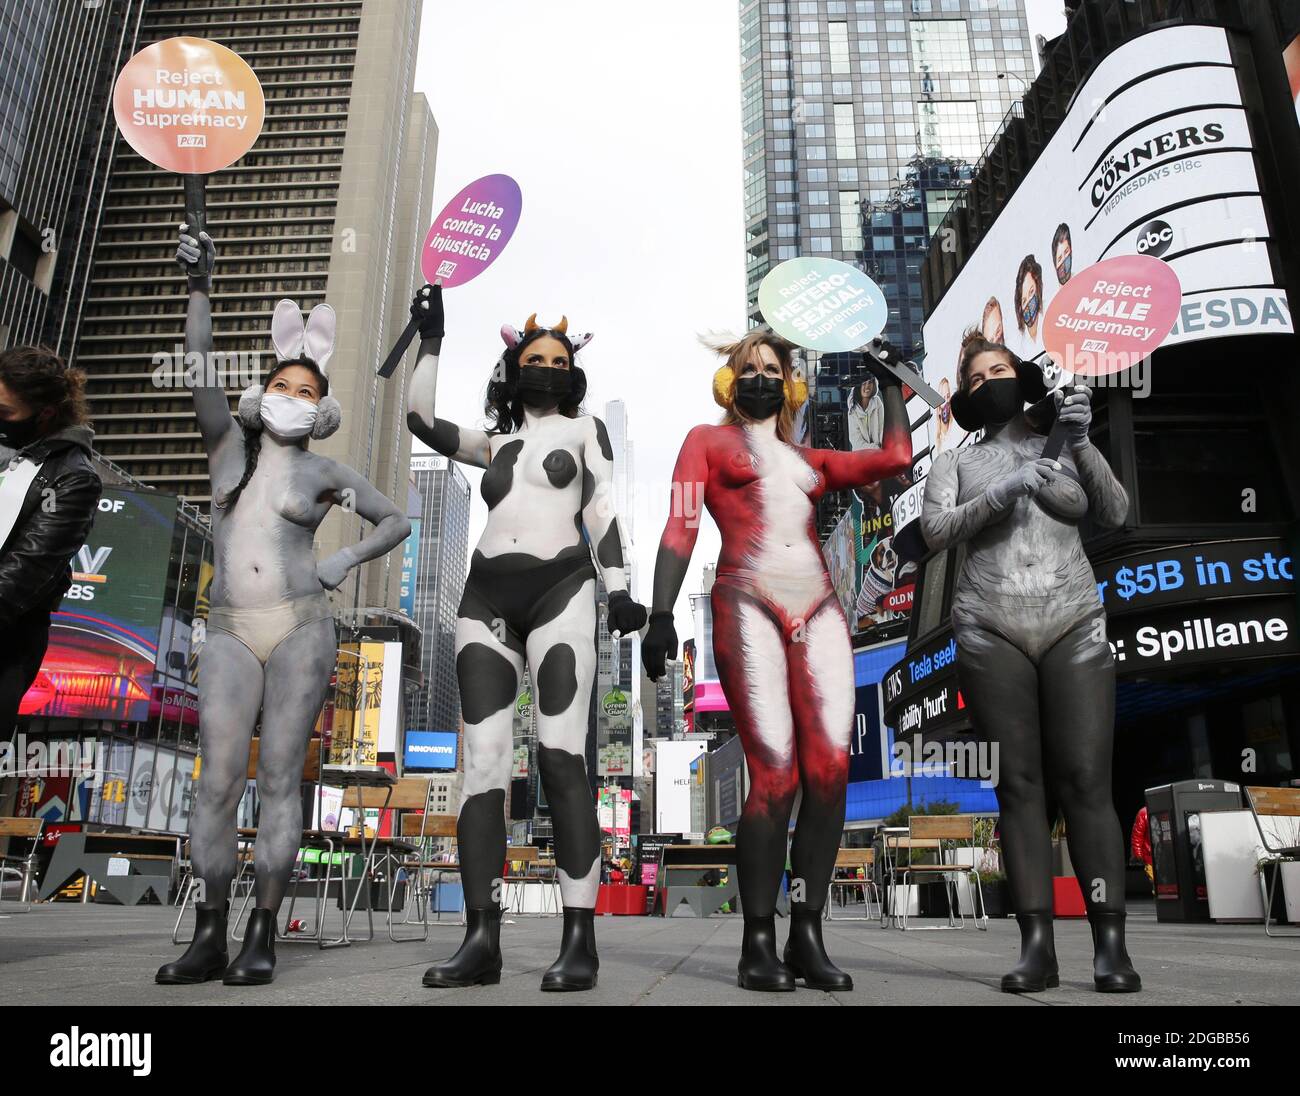 New York, Stati Uniti. 8 dicembre 2020. I manifestanti DI PETA che indossano la vernice del corpo per sembrare animali tengono in su i segni in Times Square a New York City martedì 8 dicembre 2020. I sostenitori DI PETA dipinsero come una mucca, un coniglio, una volpe, un'oca e una tigre riuniti a Times Square con segni che proclamavano: 'Rifiuto della supremazia BIANCA', 'rifiuto della supremazia ETEROSESSUALE', 'rifiuto della supremazia UMANA' e 'rifiuto della supremazia MASCHILE'. Foto di John Angelillo/UPI Credit: UPI/Alamy Live News Foto Stock